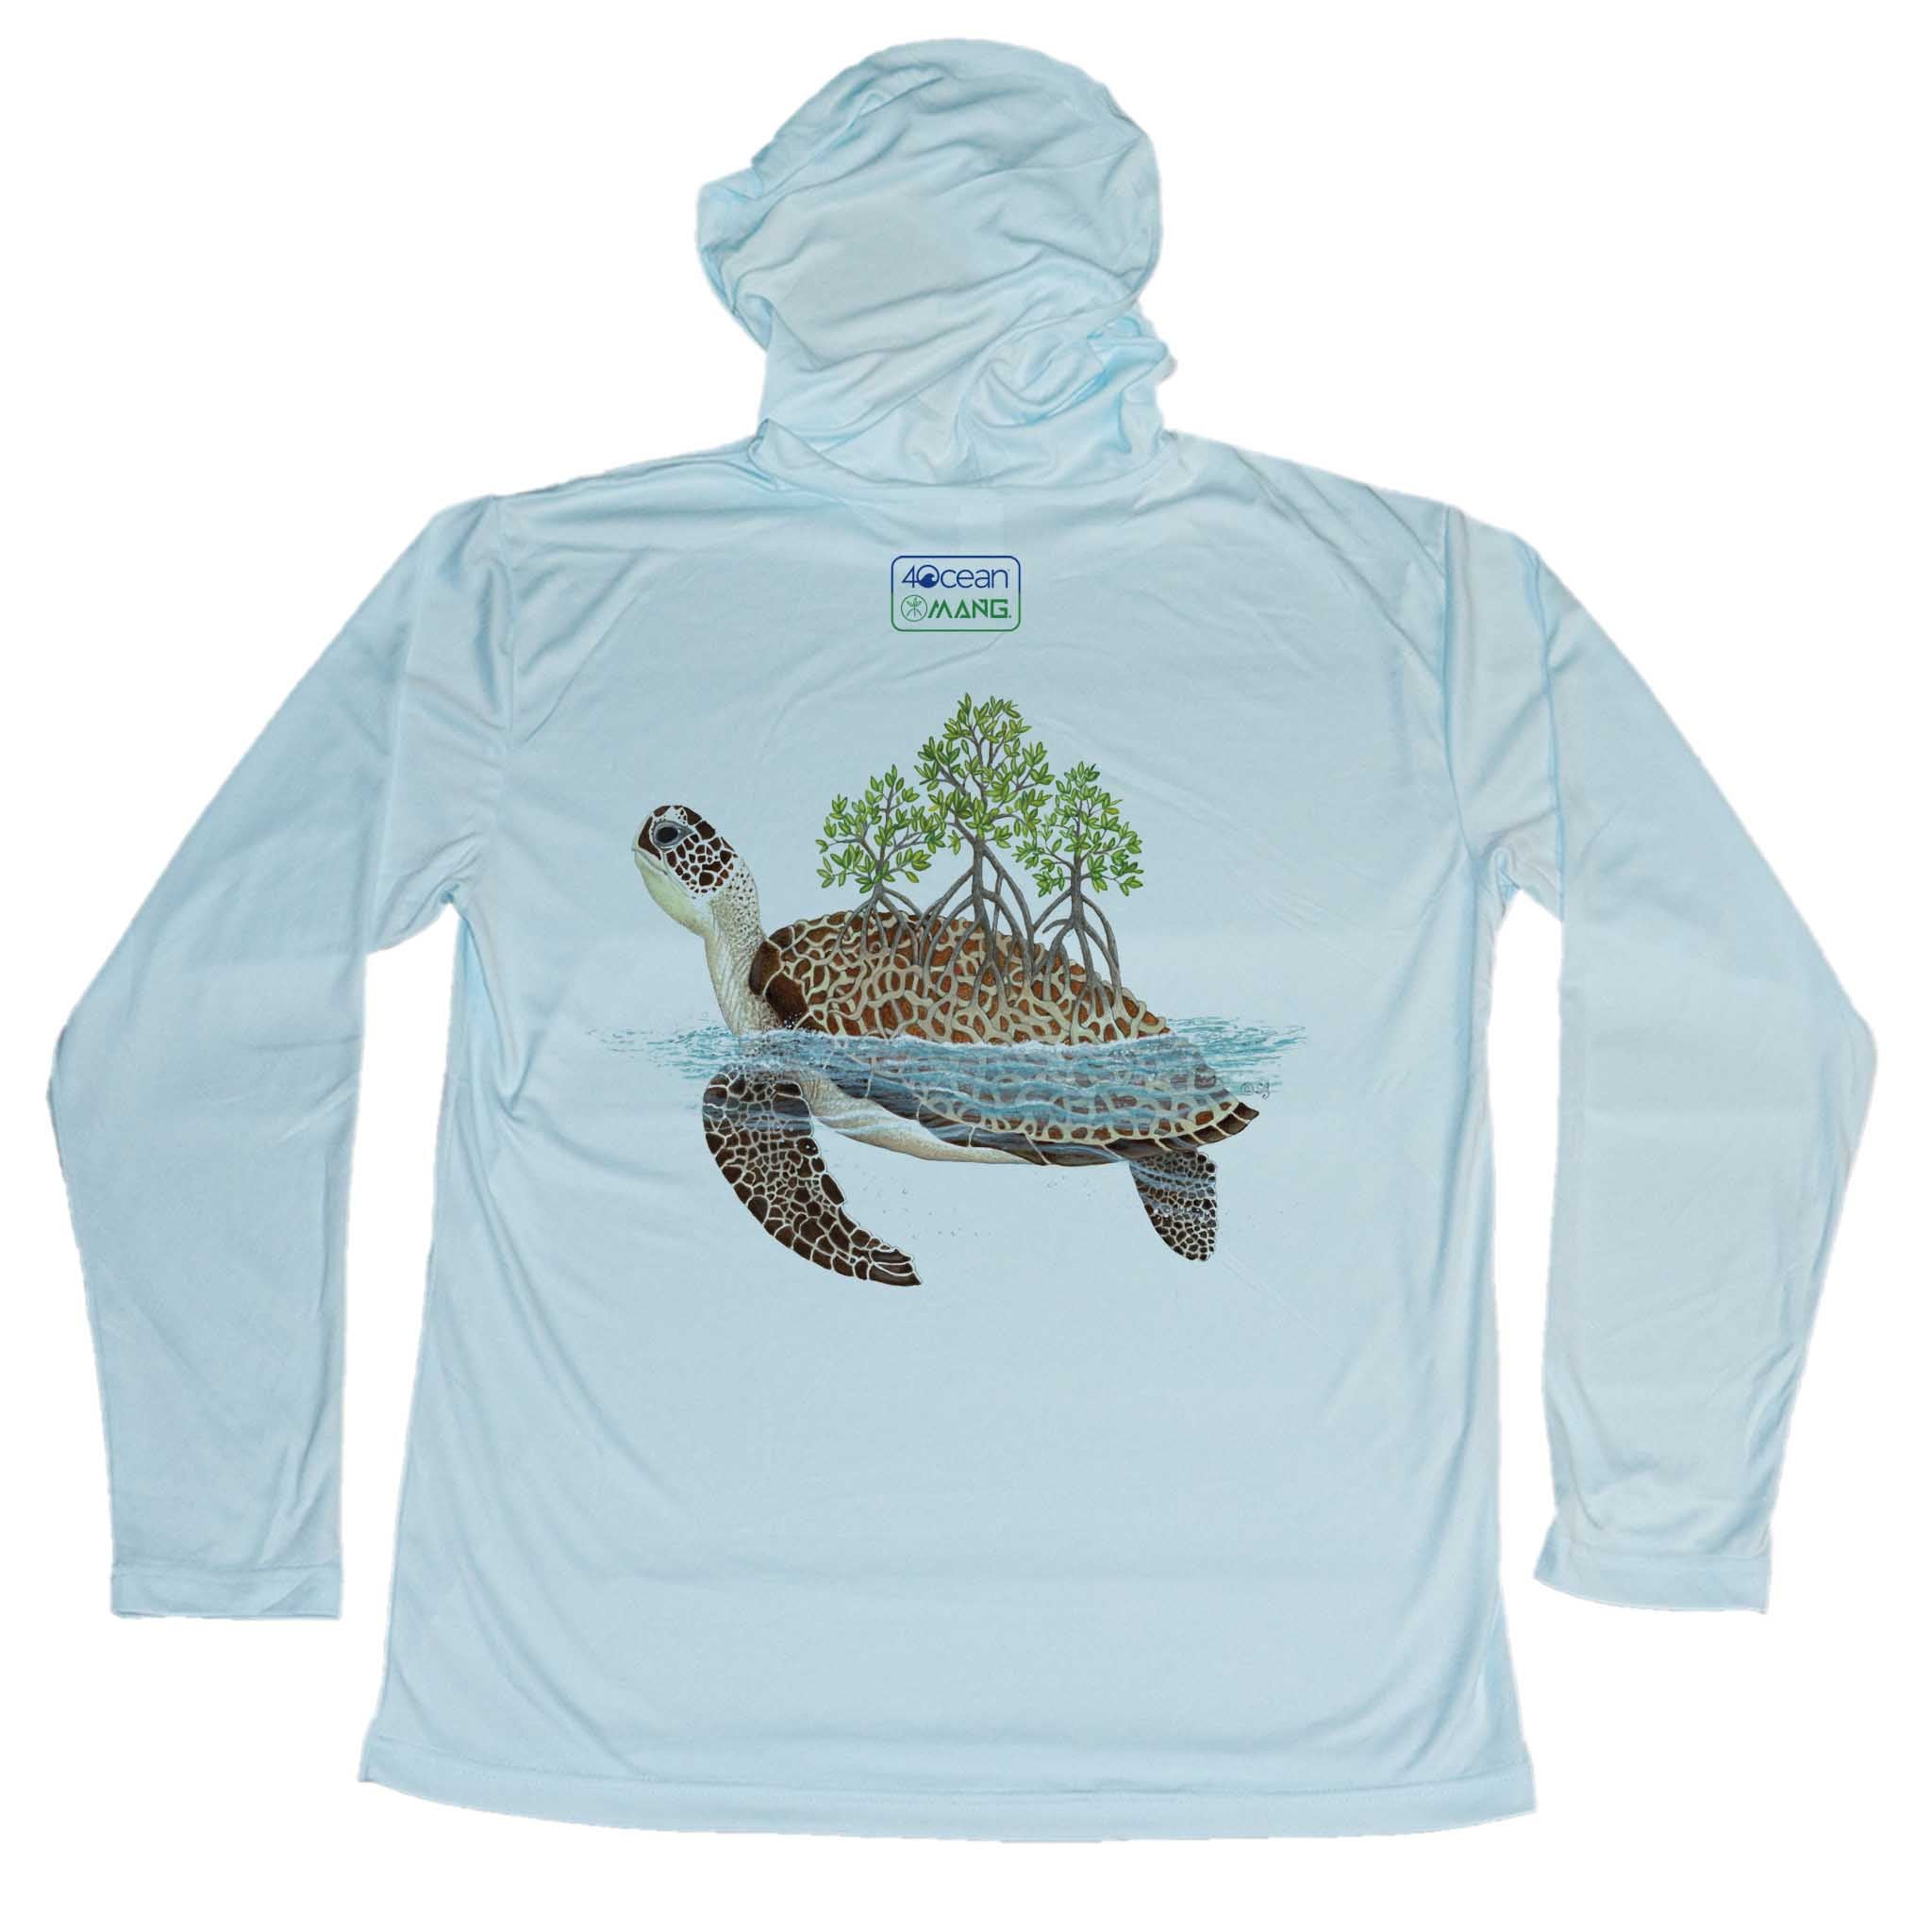 MANG 4ocean Turtle Eco Hoodie - Men's - S-Arctic Blue